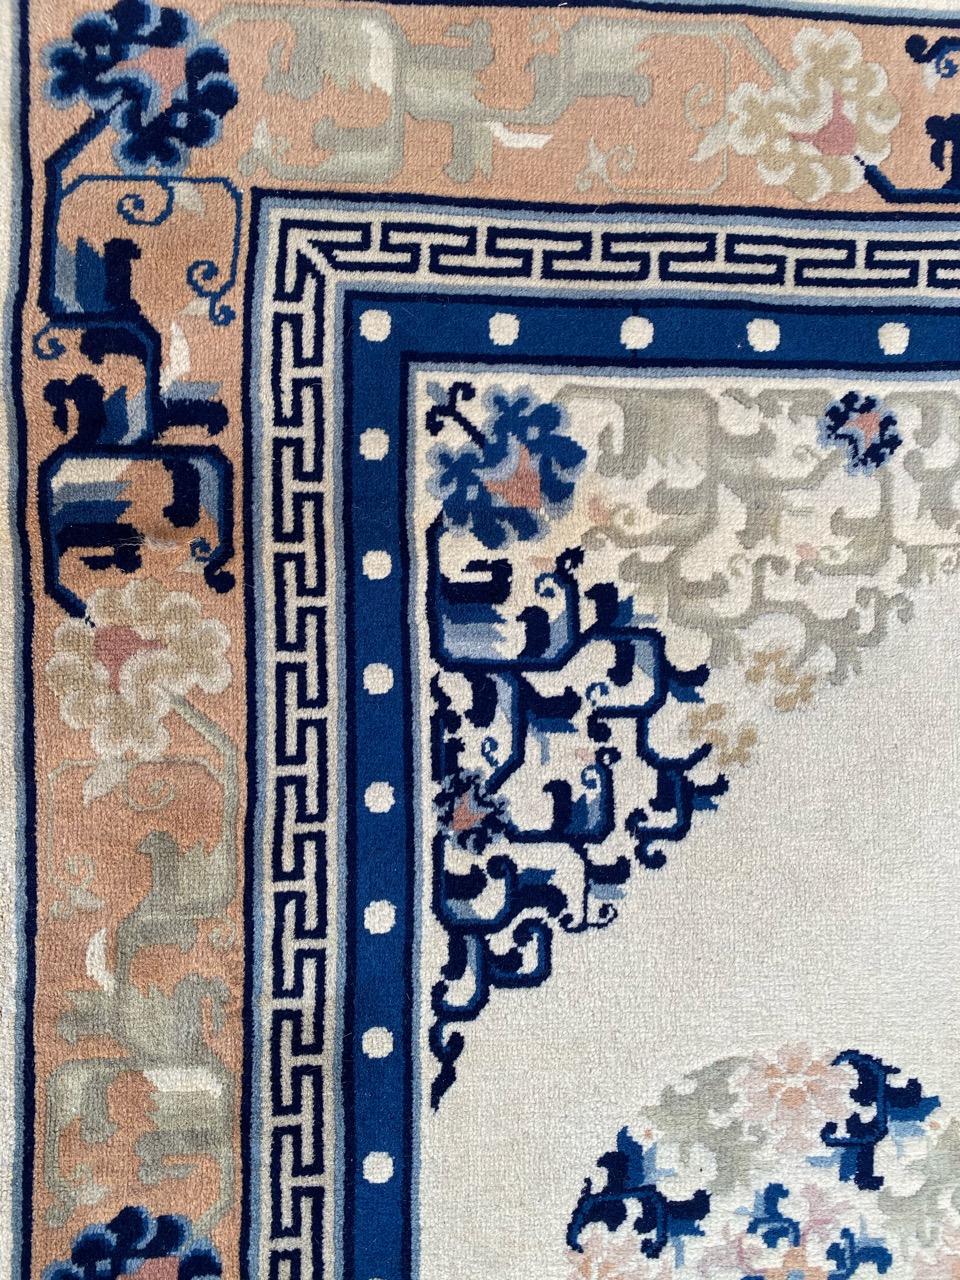 Wunderschöner großer chinesischer Peking Art Deco Teppich mit schönem chinesischem Muster und hellen Farben, komplett und fein handgeknüpft mit Wollsamt auf Baumwollgrund.